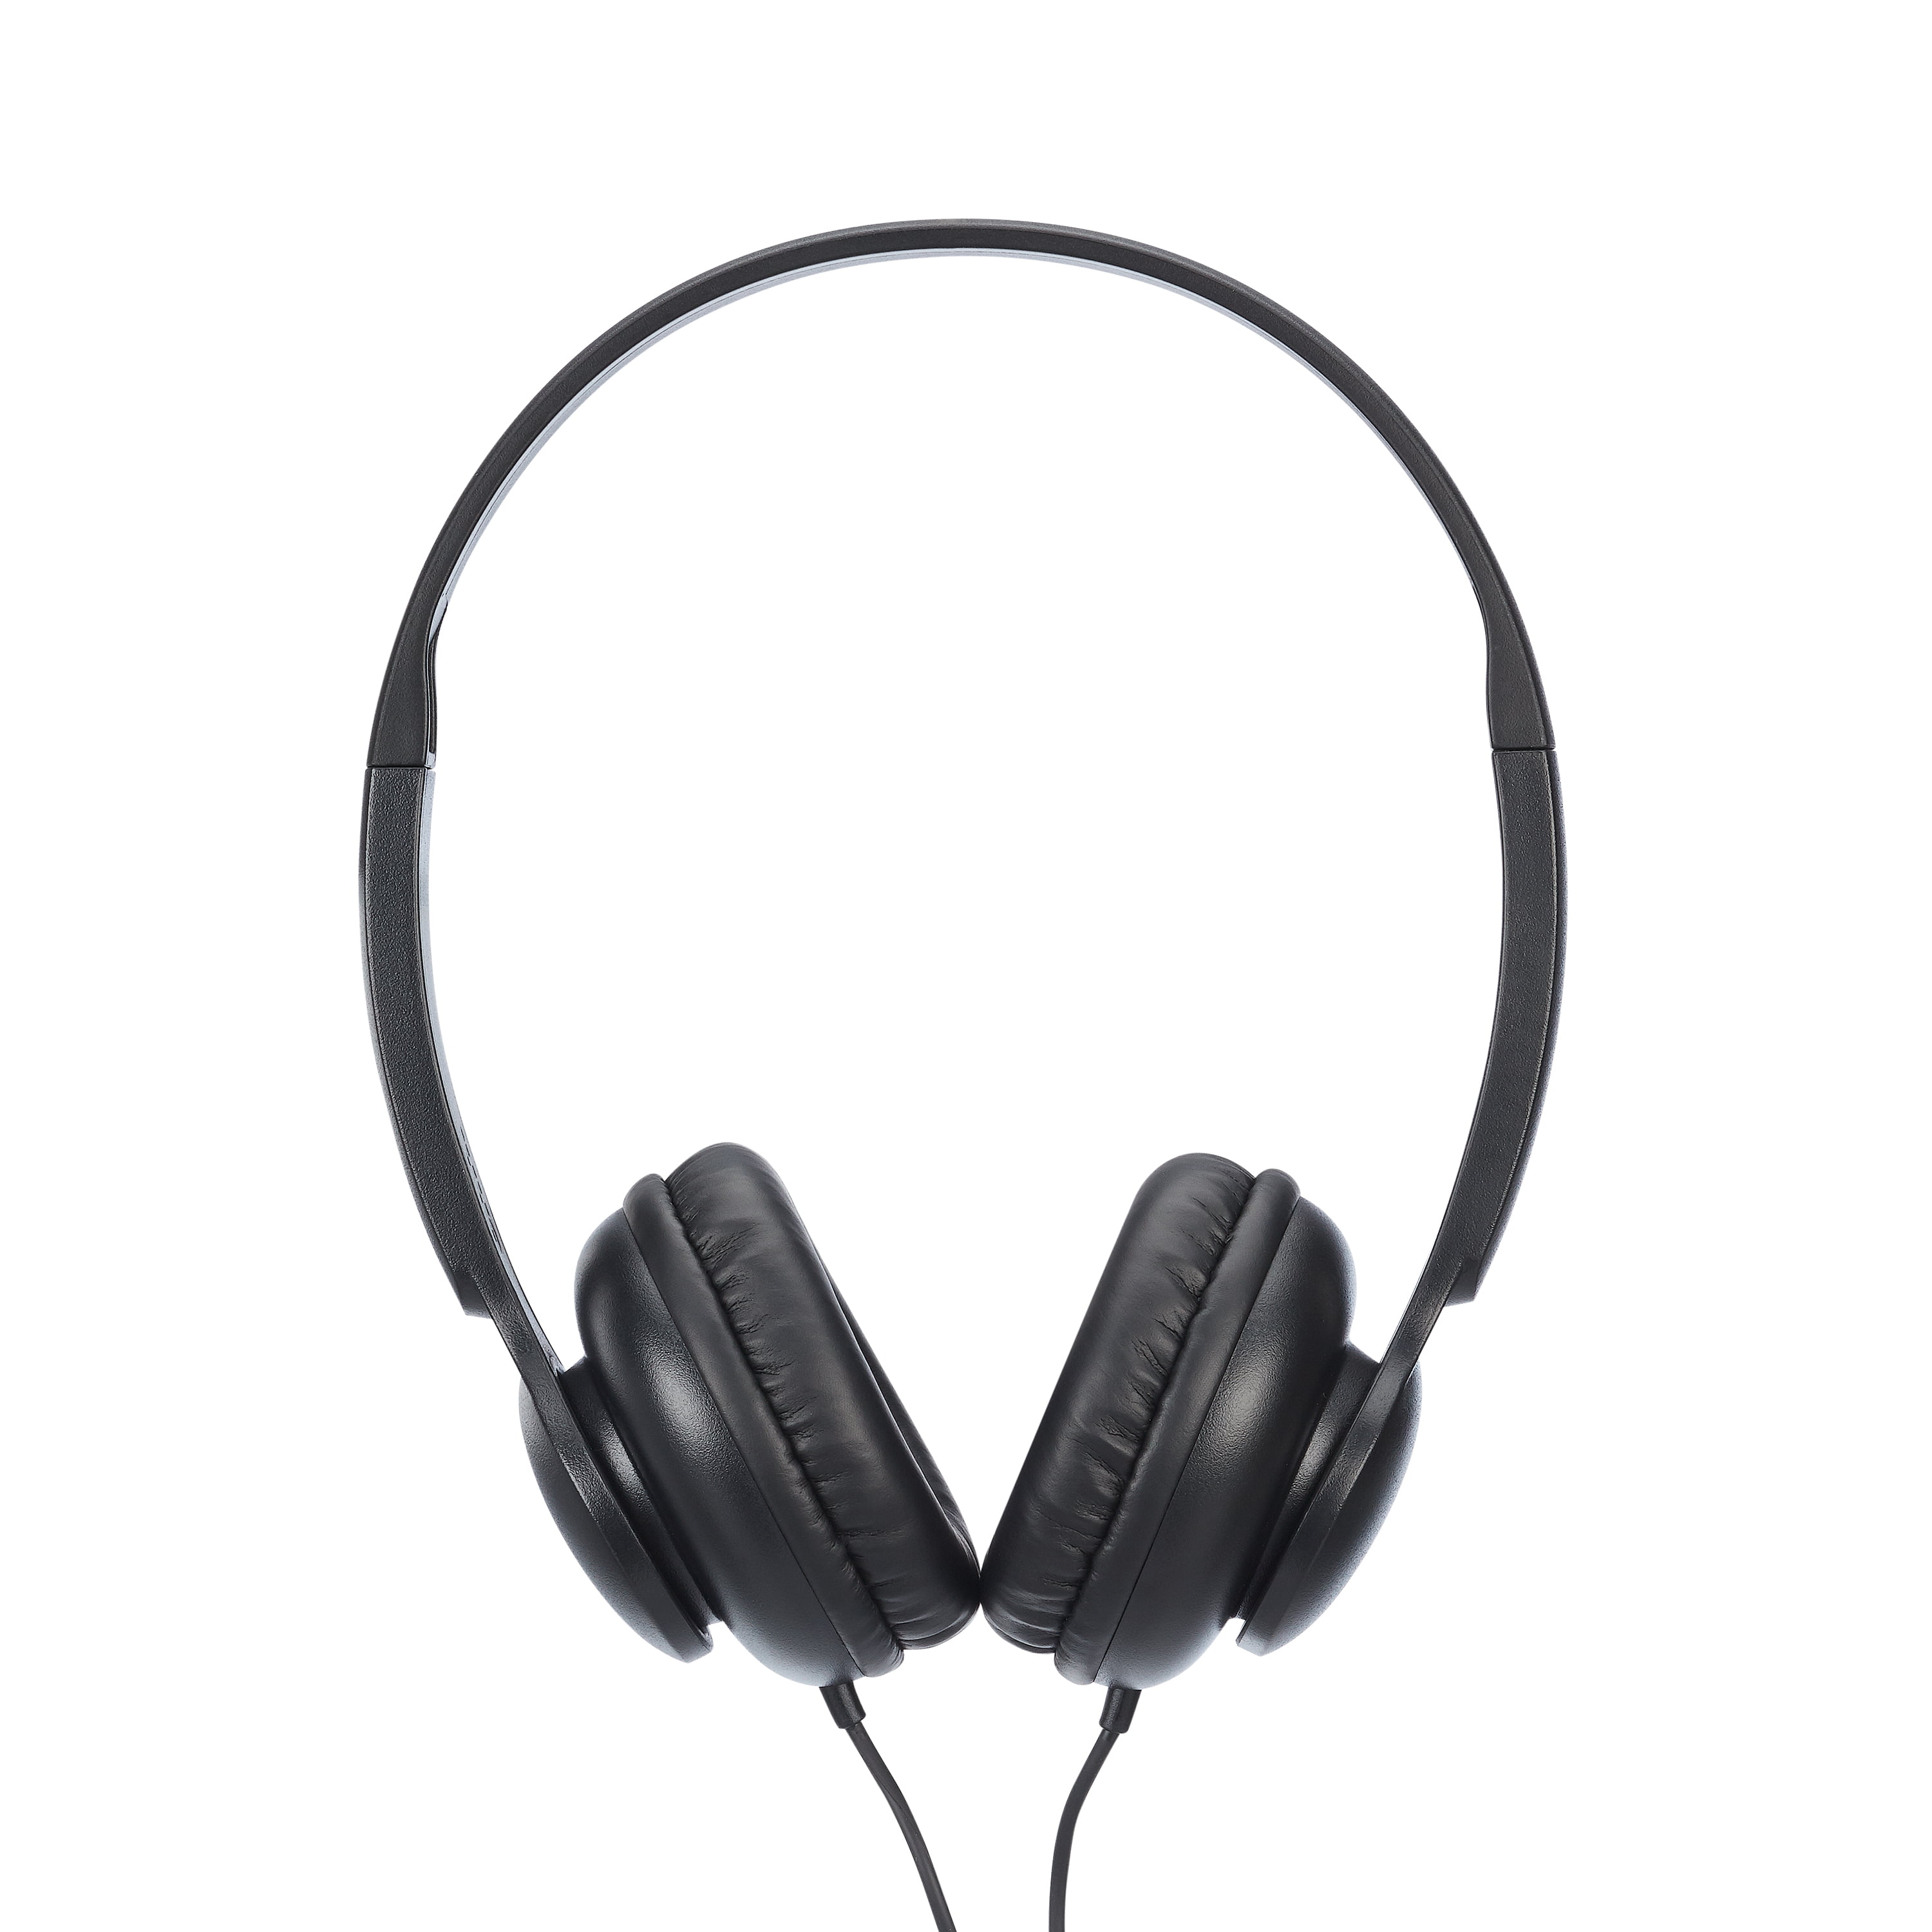 ONN ON EAR 3.5 mm Headphones Black Lightweight with Adjustable Headband New 